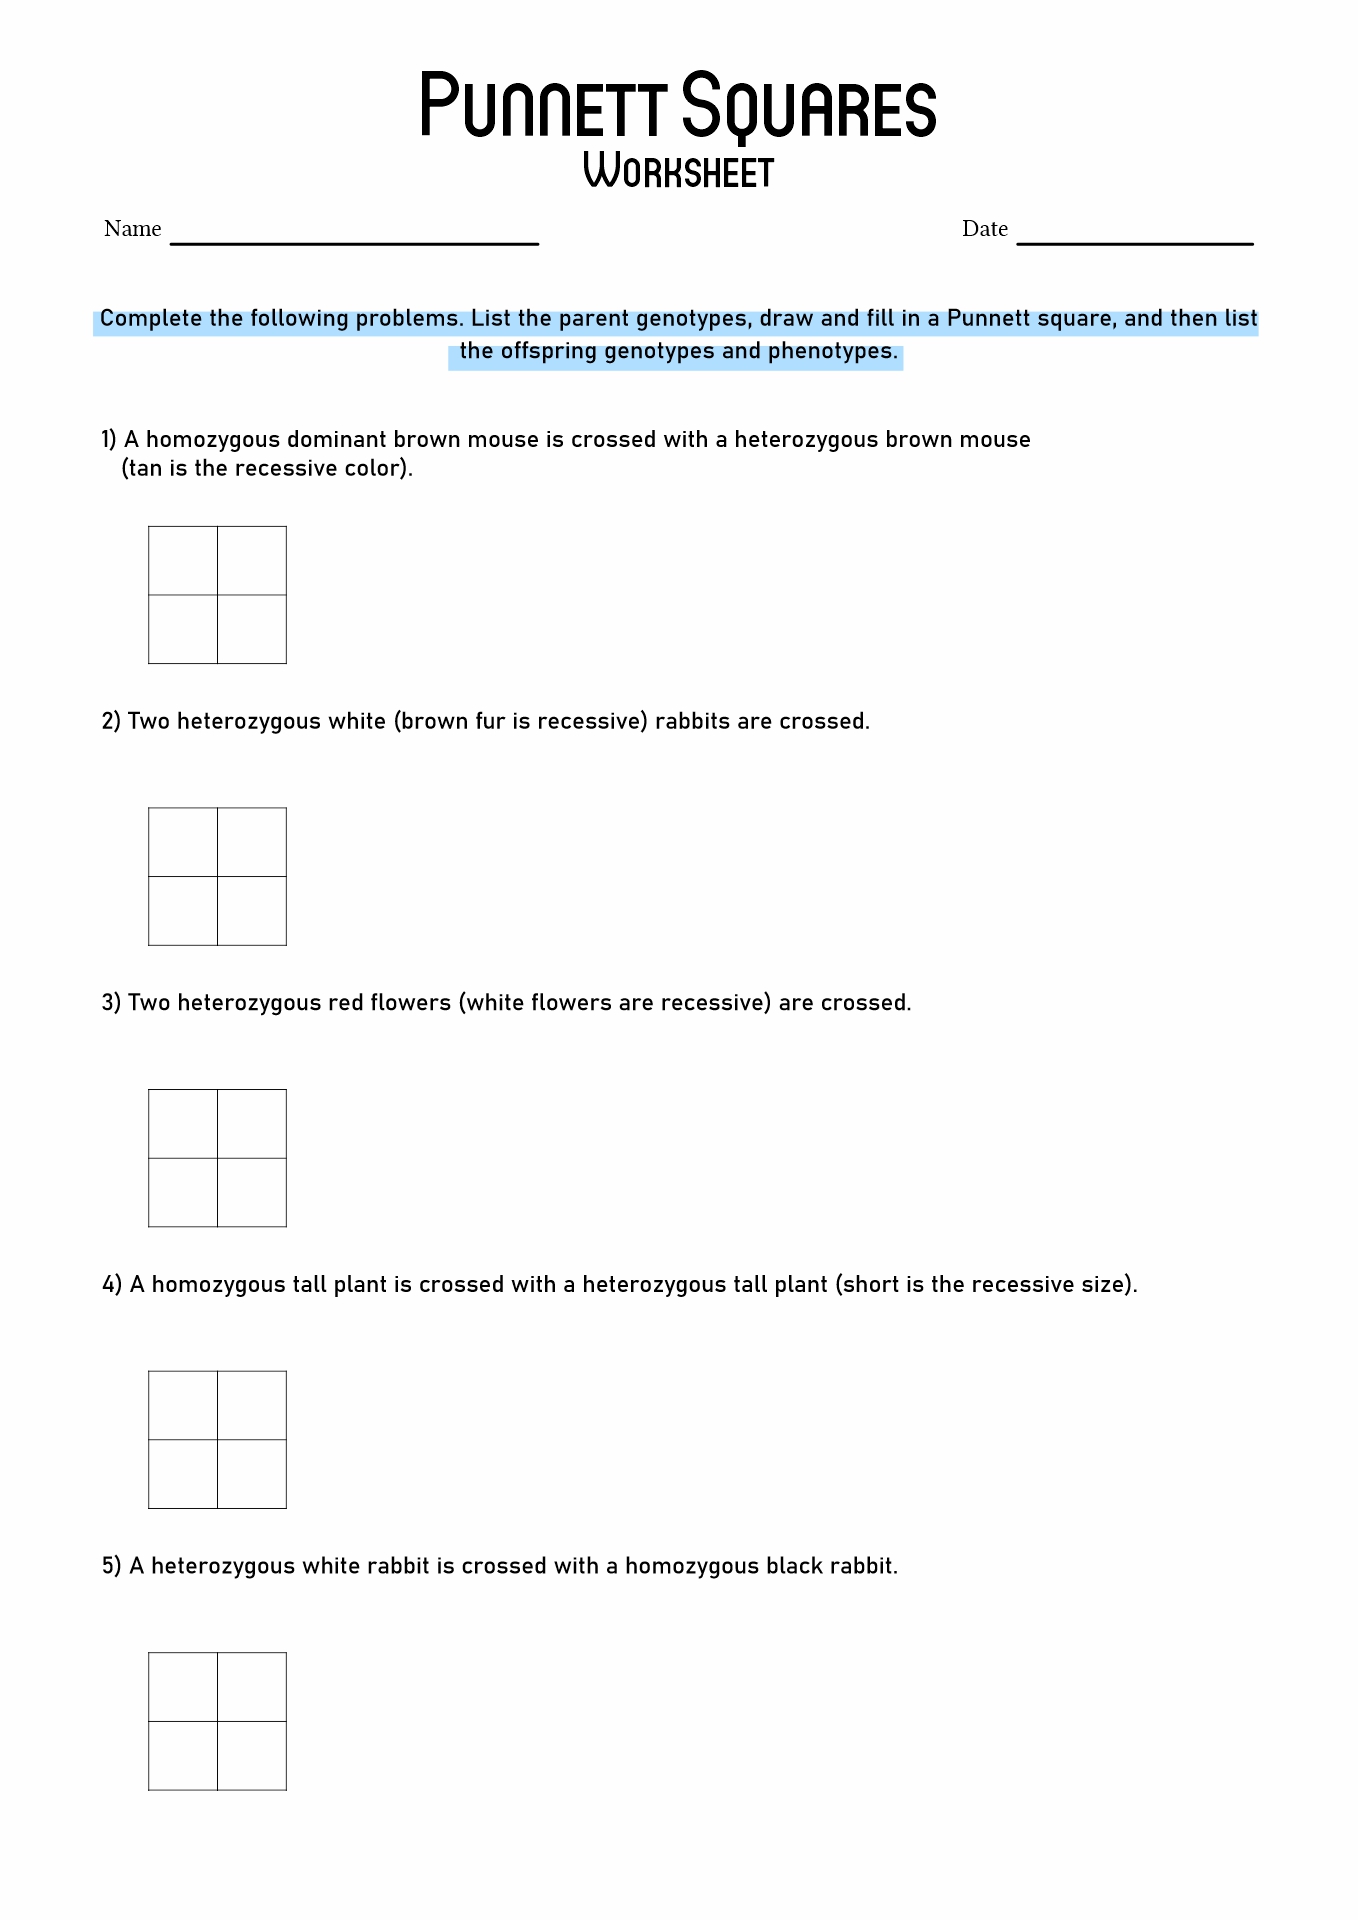 15-best-images-of-punnett-square-worksheet-answer-key-punnett-square